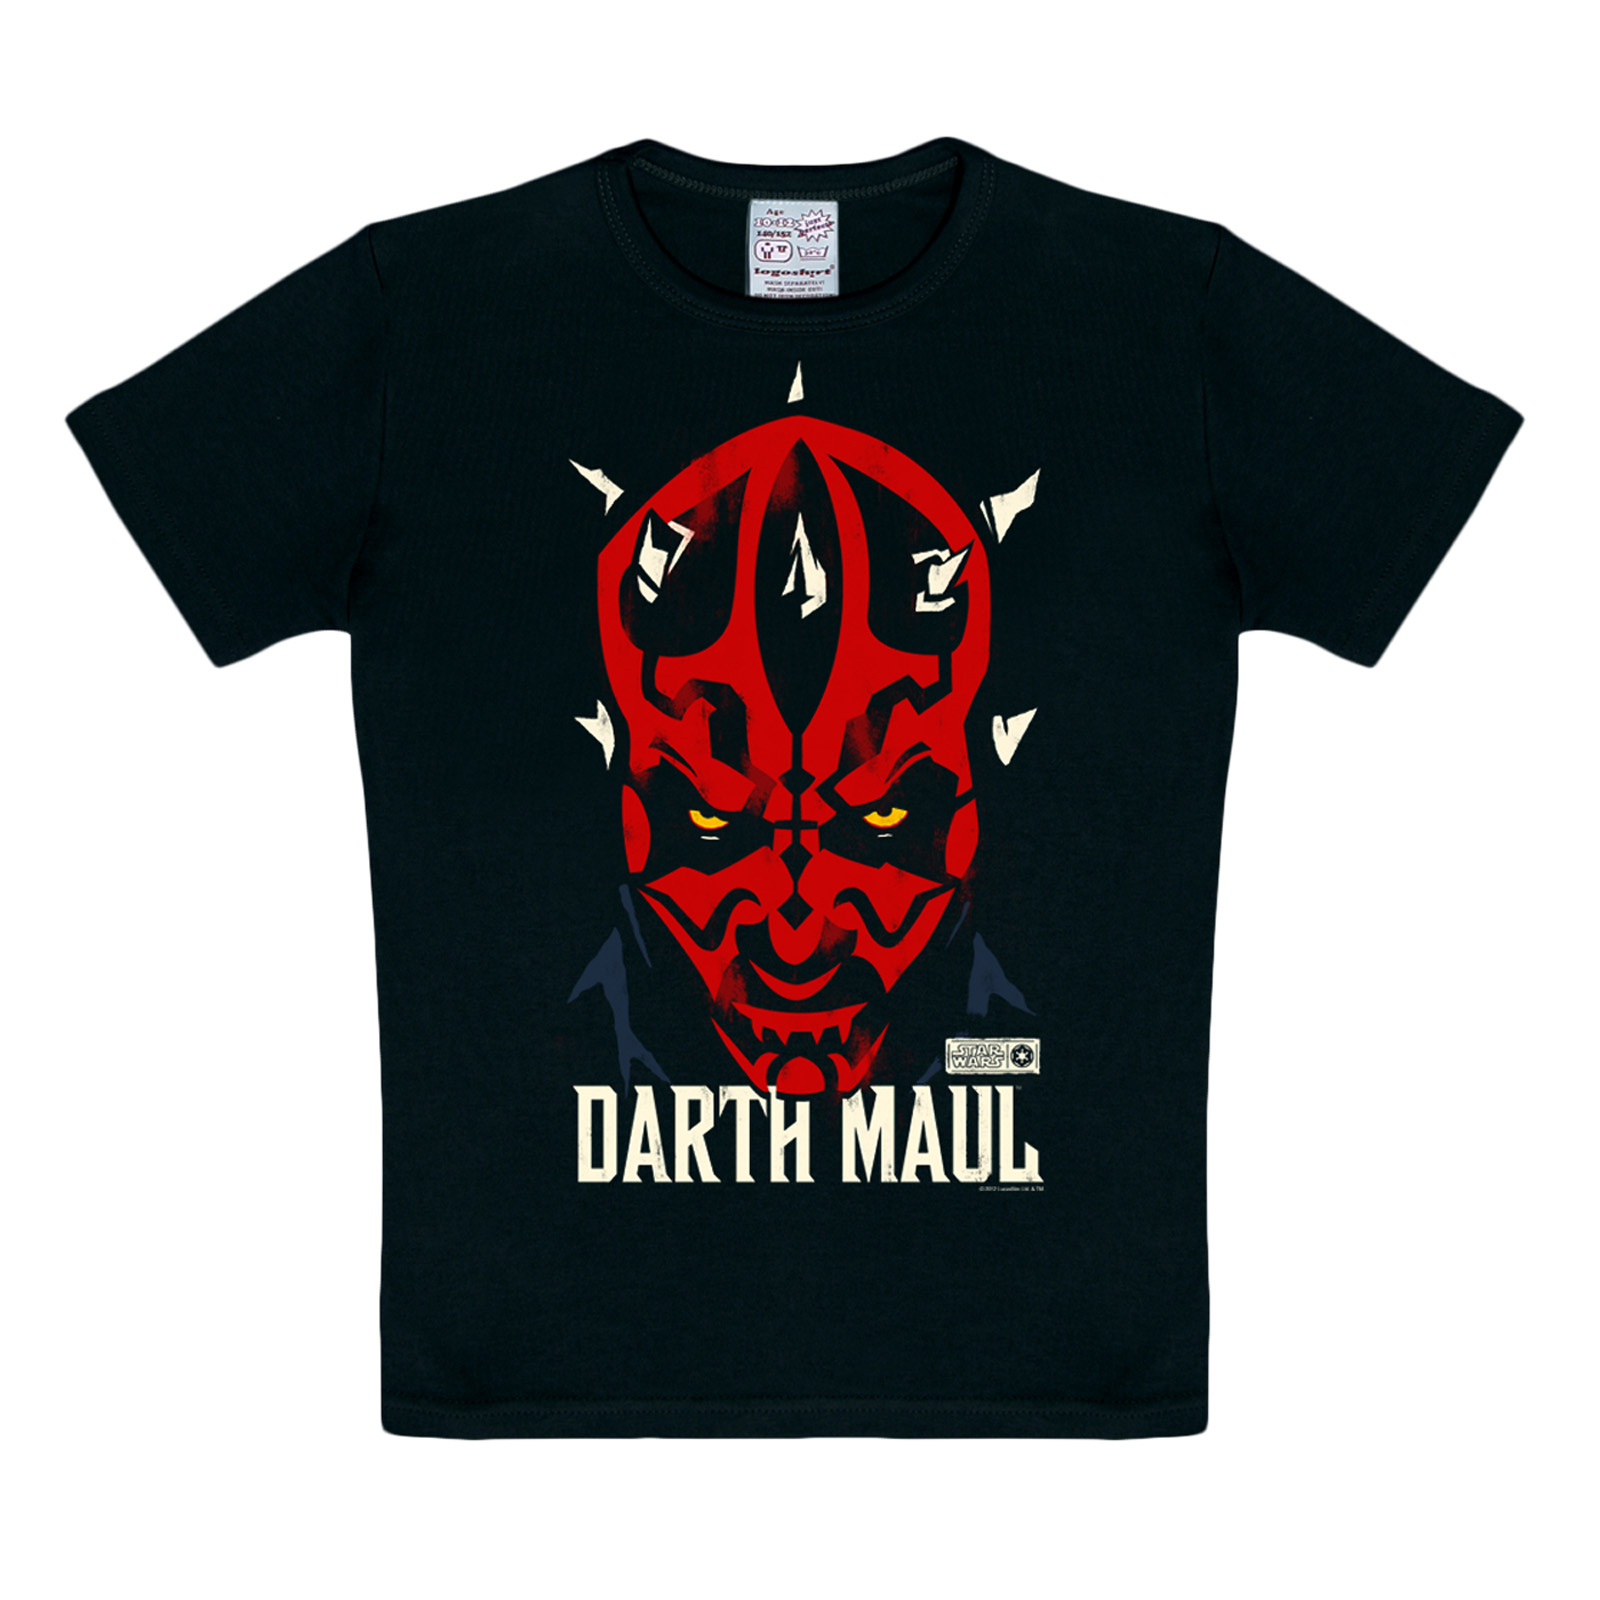 Star Wars - Darth Maul Kinder T-Shirt schwarz